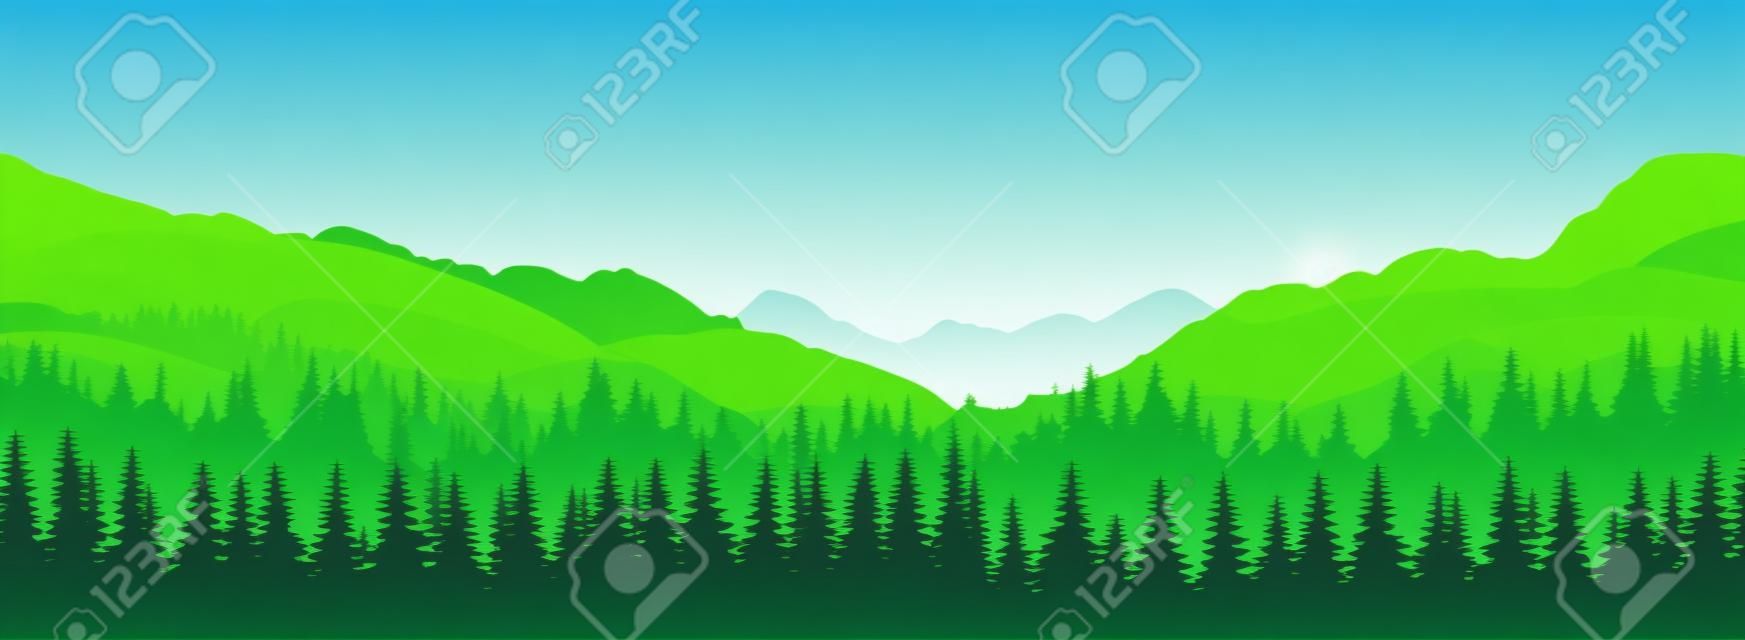 Vector panoramisch landschap met groene silhouetten van bomen en heuvels